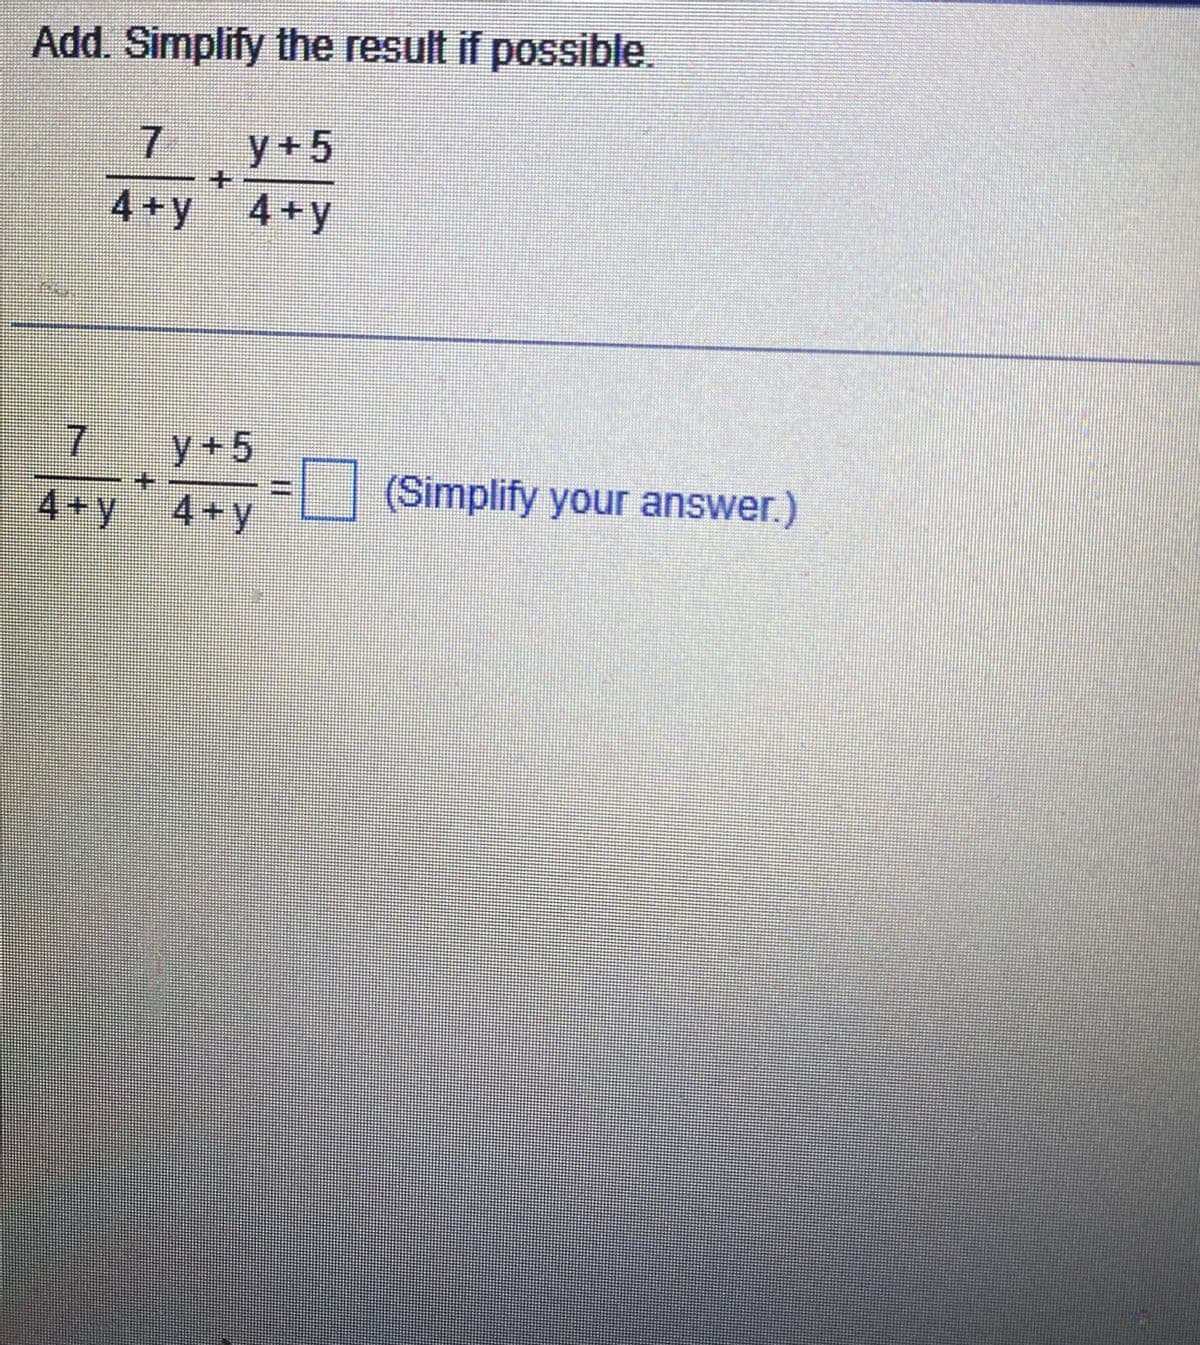 Add. Simplify the result if possible.
7 y+5
4+y 4+y
7
4+y
==
#E
y+5
4+y
(Simplify your answer.)